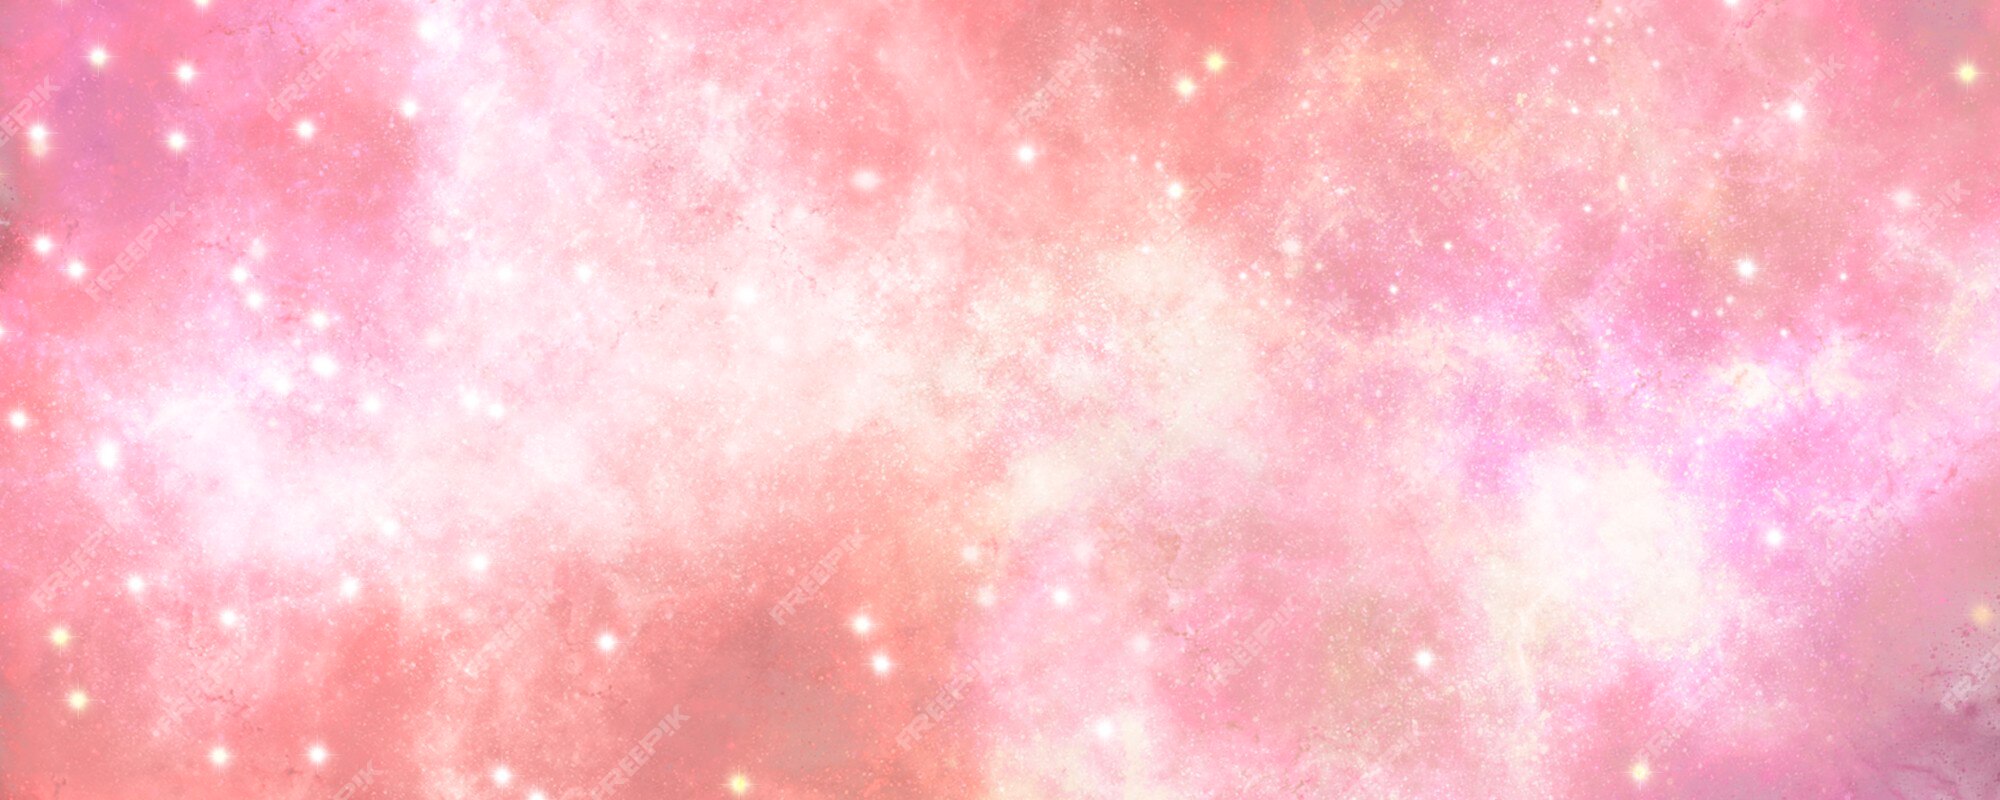 Abstract gradient pink sky: Hãy ngắm nhìn những màu sắc rực rỡ và huyền bí của Abstract gradient pink sky - một thước phim đầy nghệ thuật. Những sắc màu độc đáo và hình dạng trừu tượng tạo ra một không gian đầy mê hoặc và kỳ lạ, chắc chắn sẽ khiến bạn cảm thấy thú vị.